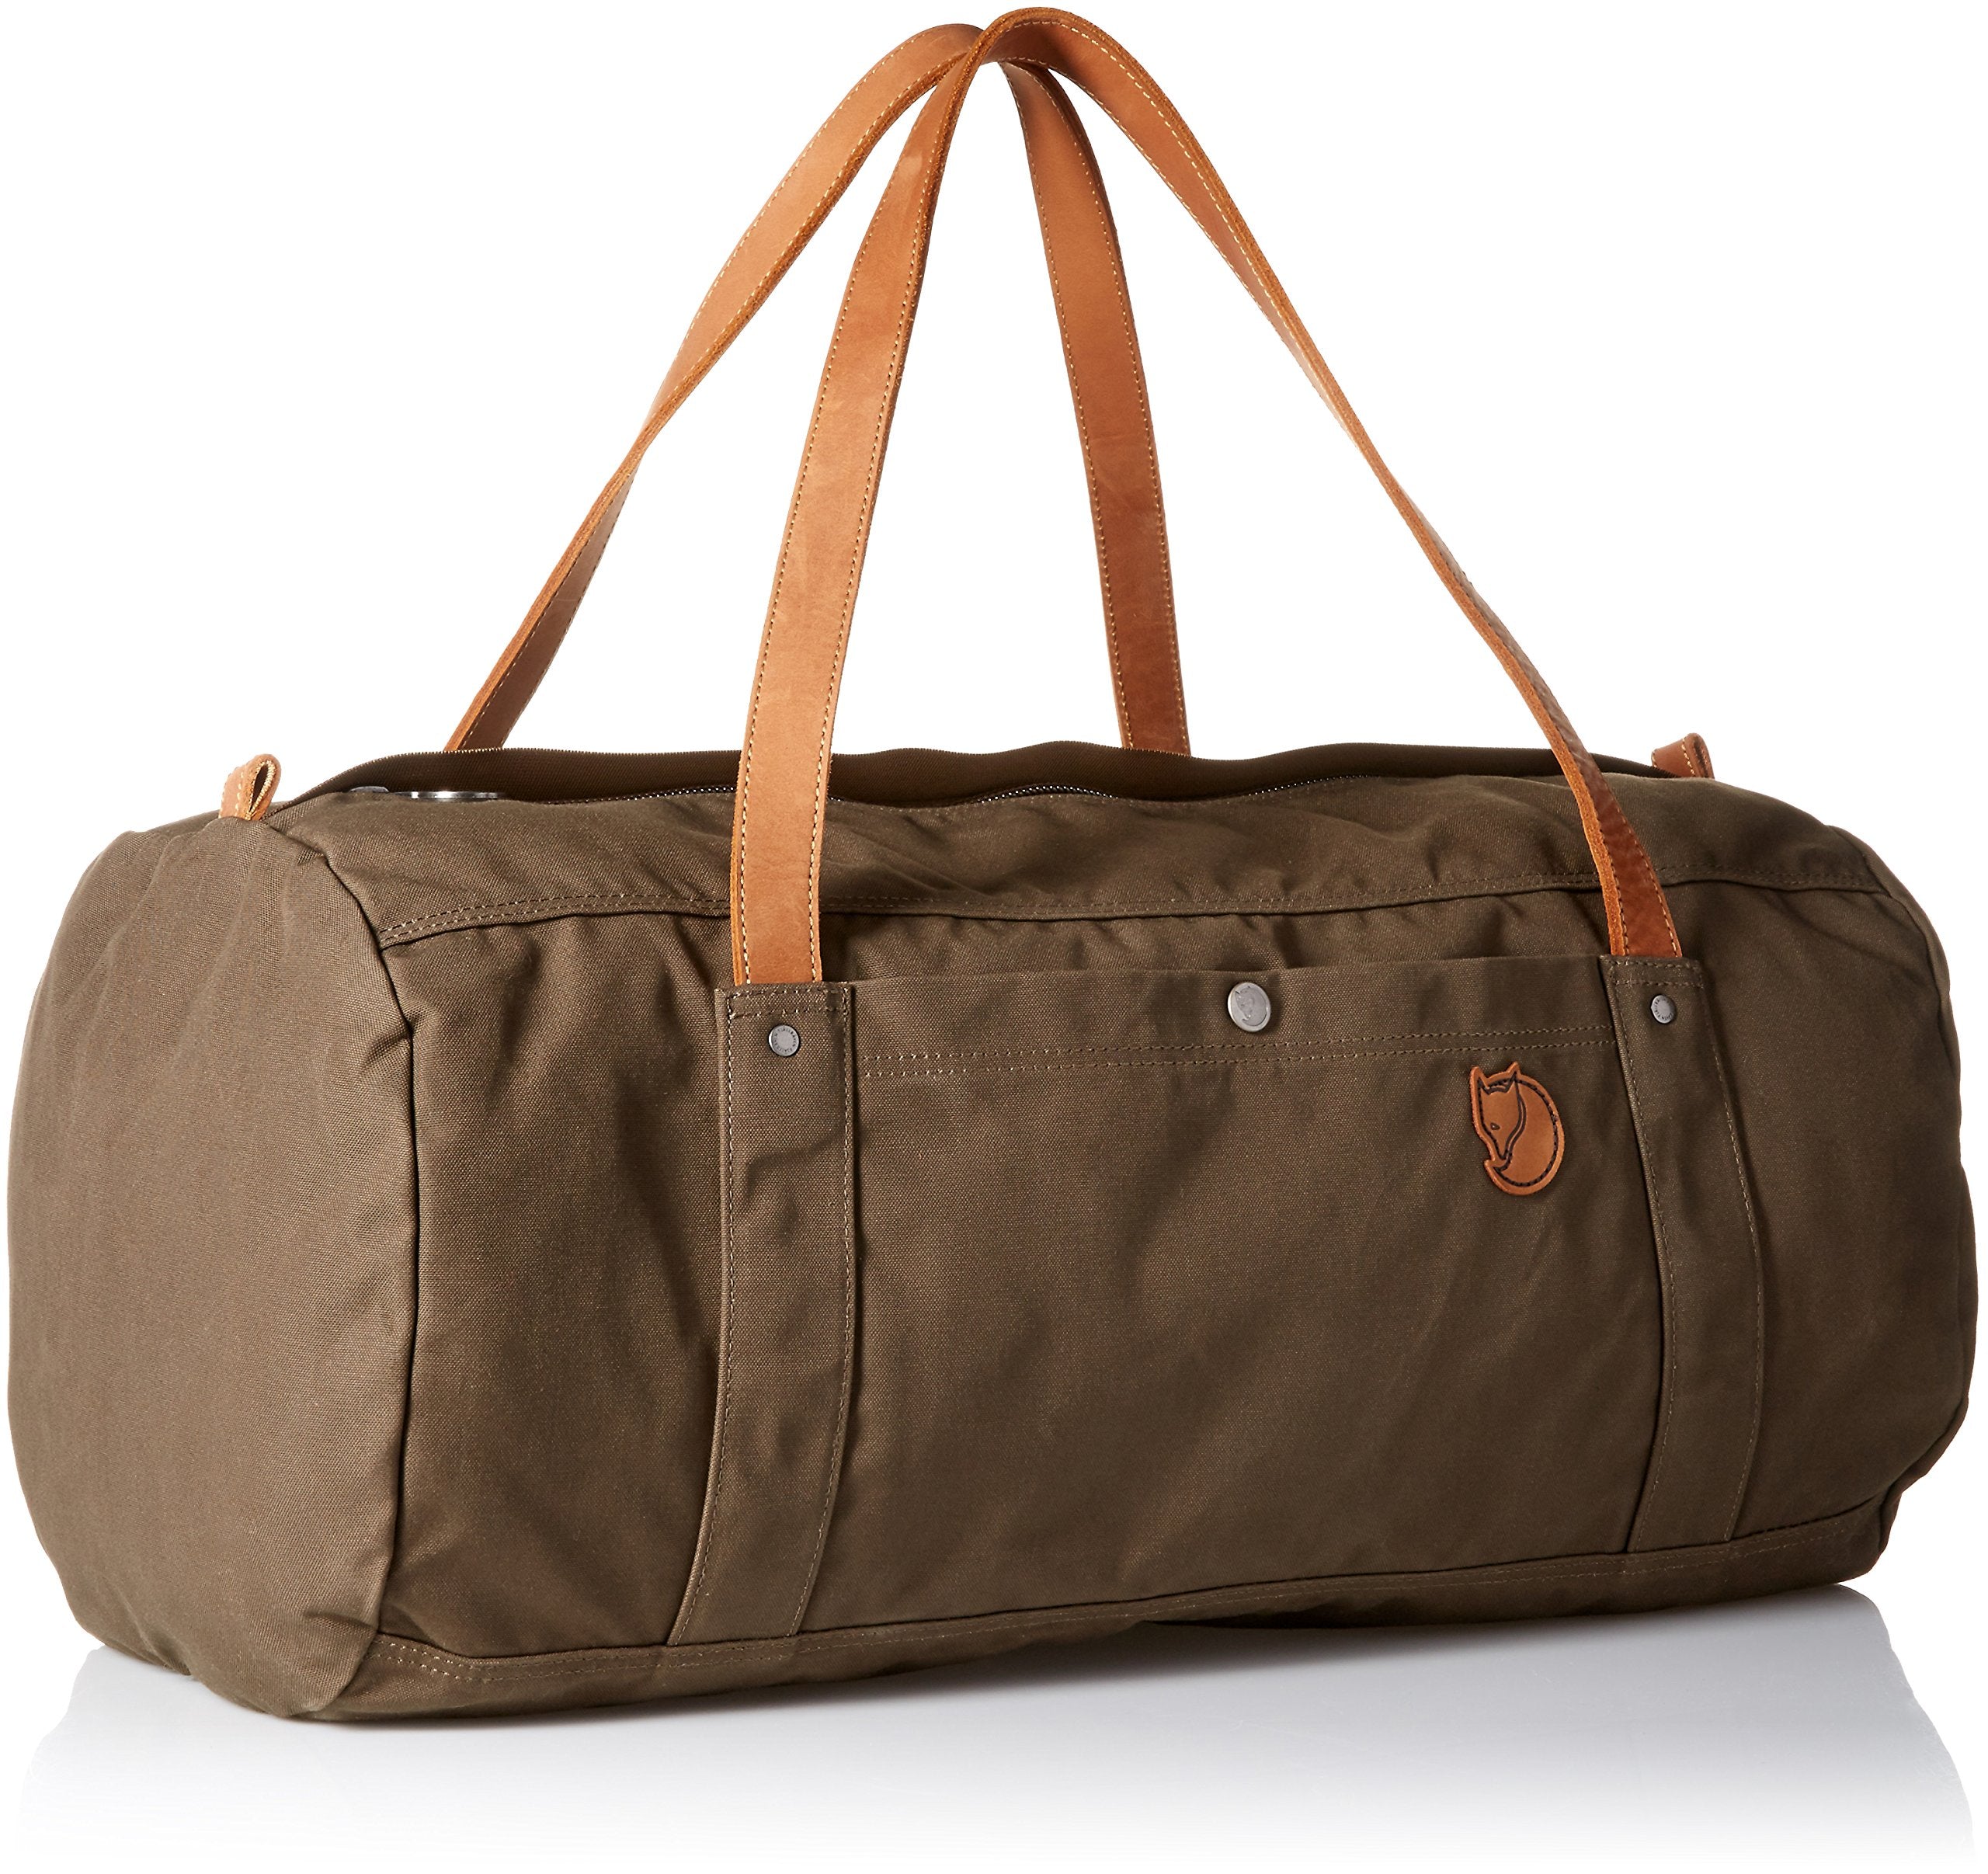 galerij aangenaam Benadering Fjallraven Duffel No.4 Duffel Bags – Luggage Online